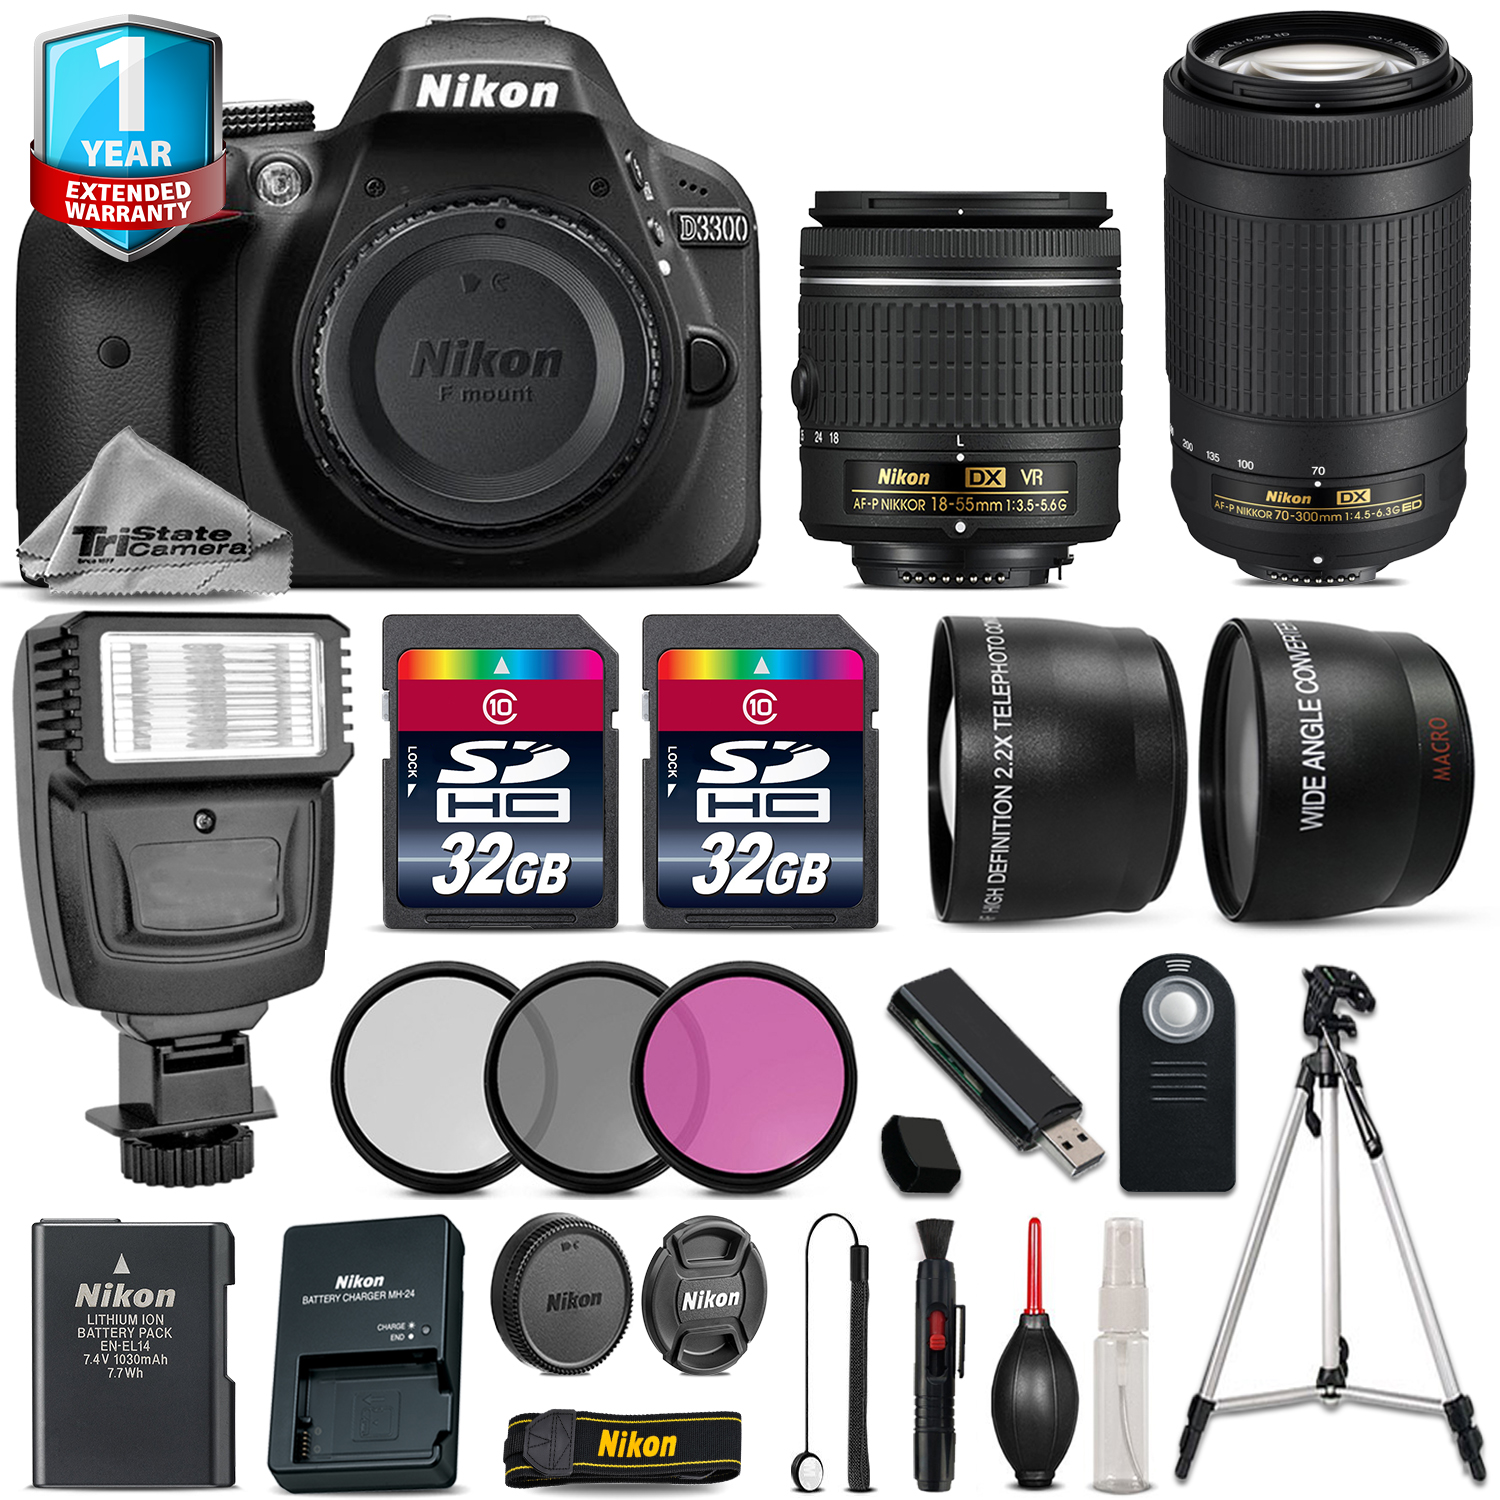 D3300 DSLR Camera + 18-55mm VR + 70-300mm + 64GB + Flash + 1yr Warranty *FREE SHIPPING*